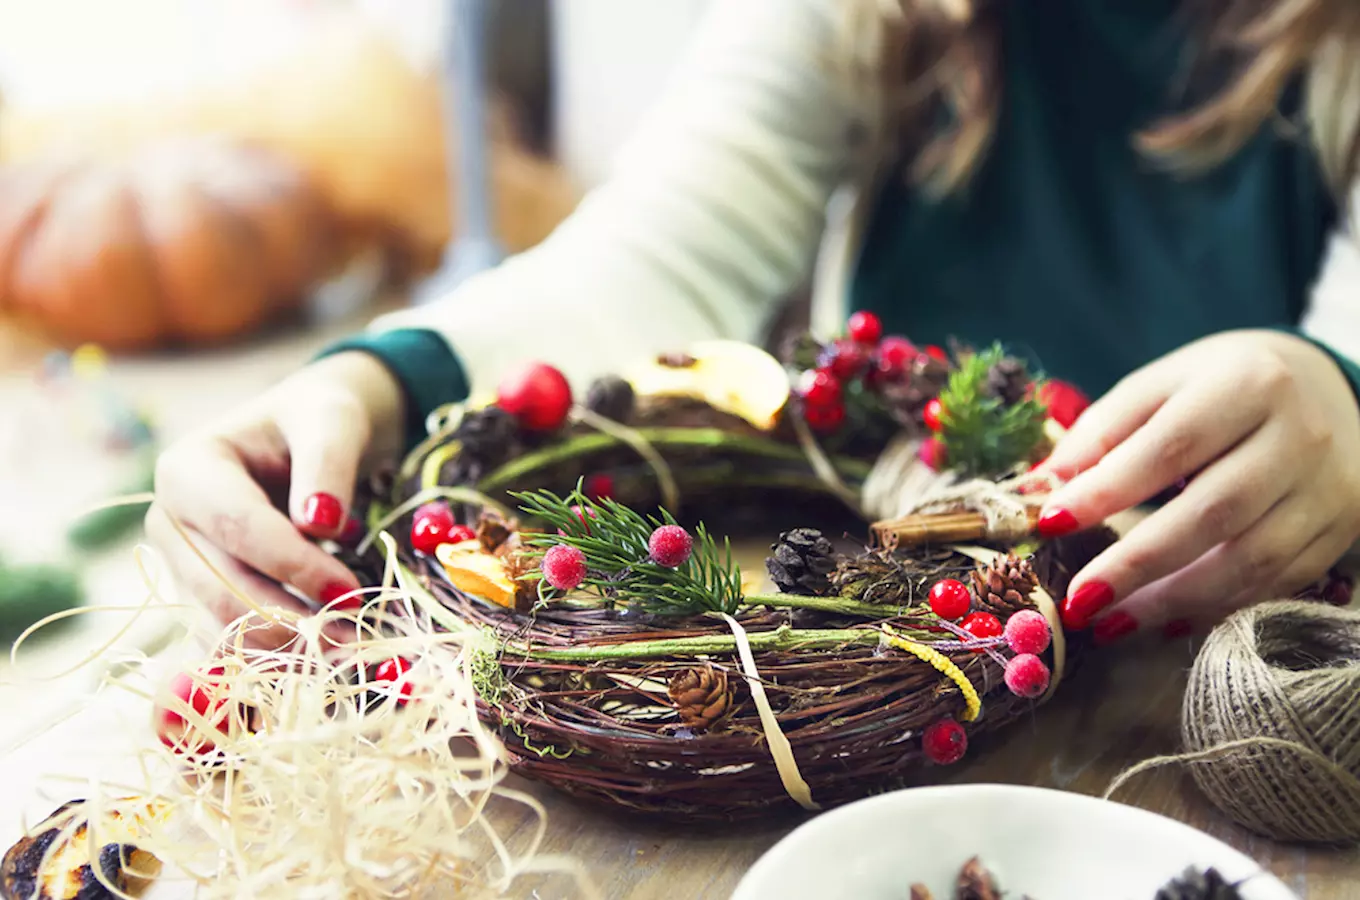 Vyrobte pro své blízké originální dárky nebo vánoční dekorace